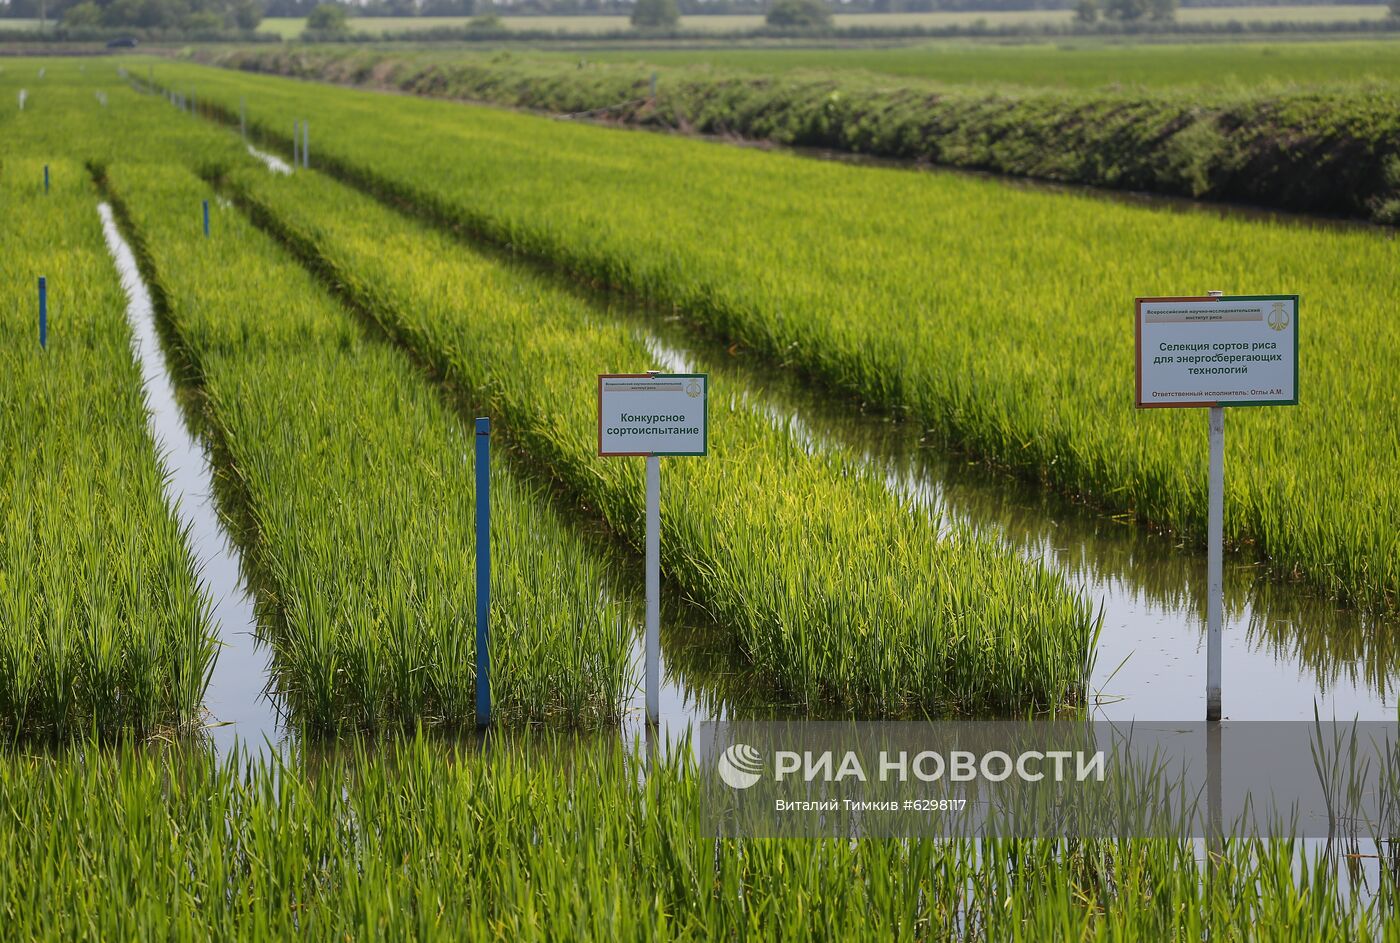 Федеральный научный центр риса в Краснодаре